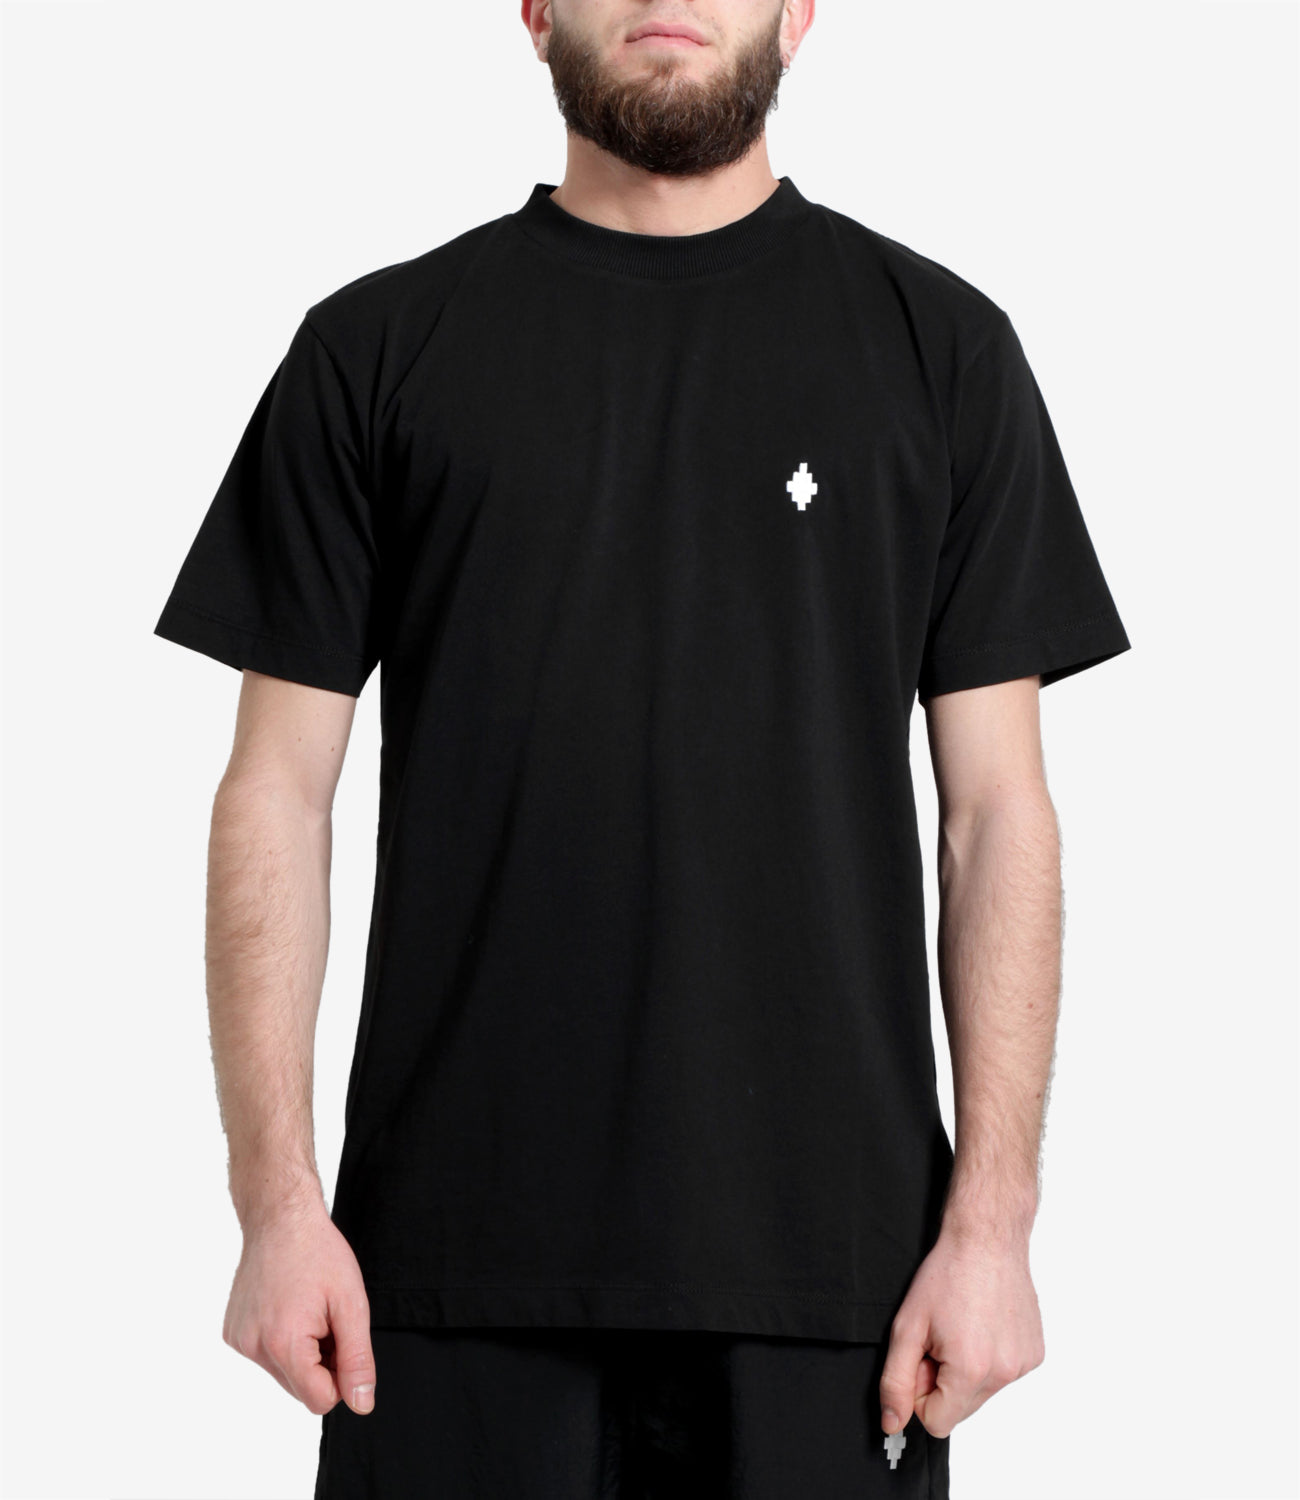 Marcelo Burlon | T-Shirt Cross Black and White